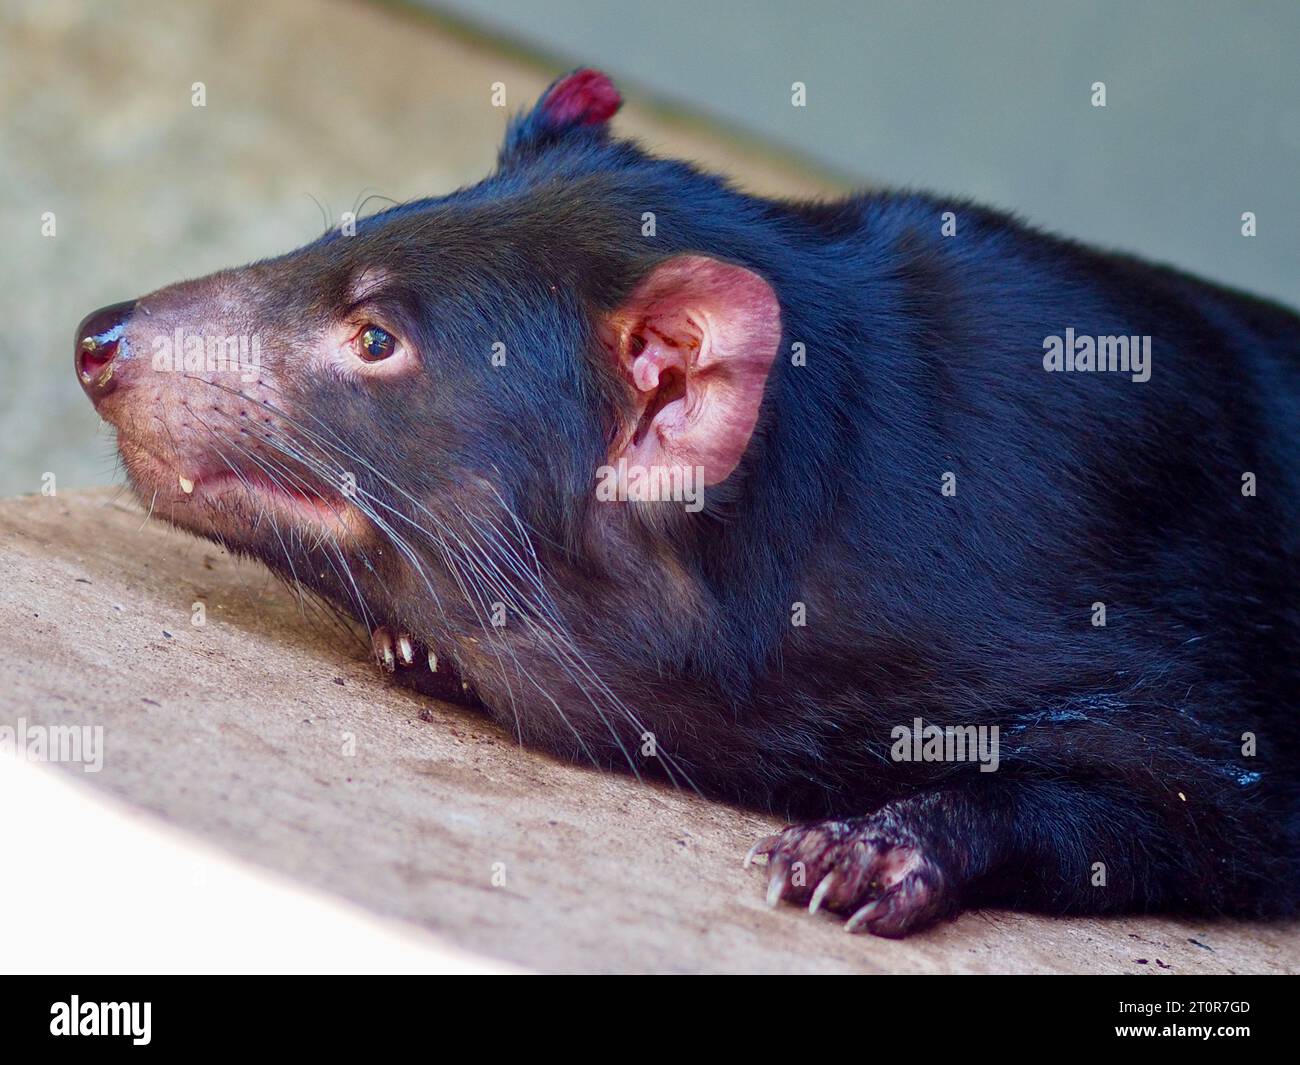 Ein Nahaufnahme-Porträt eines sensationellen, unverwechselbaren Tasmanischen Teufels in ruhiger Ruhe. Stockfoto